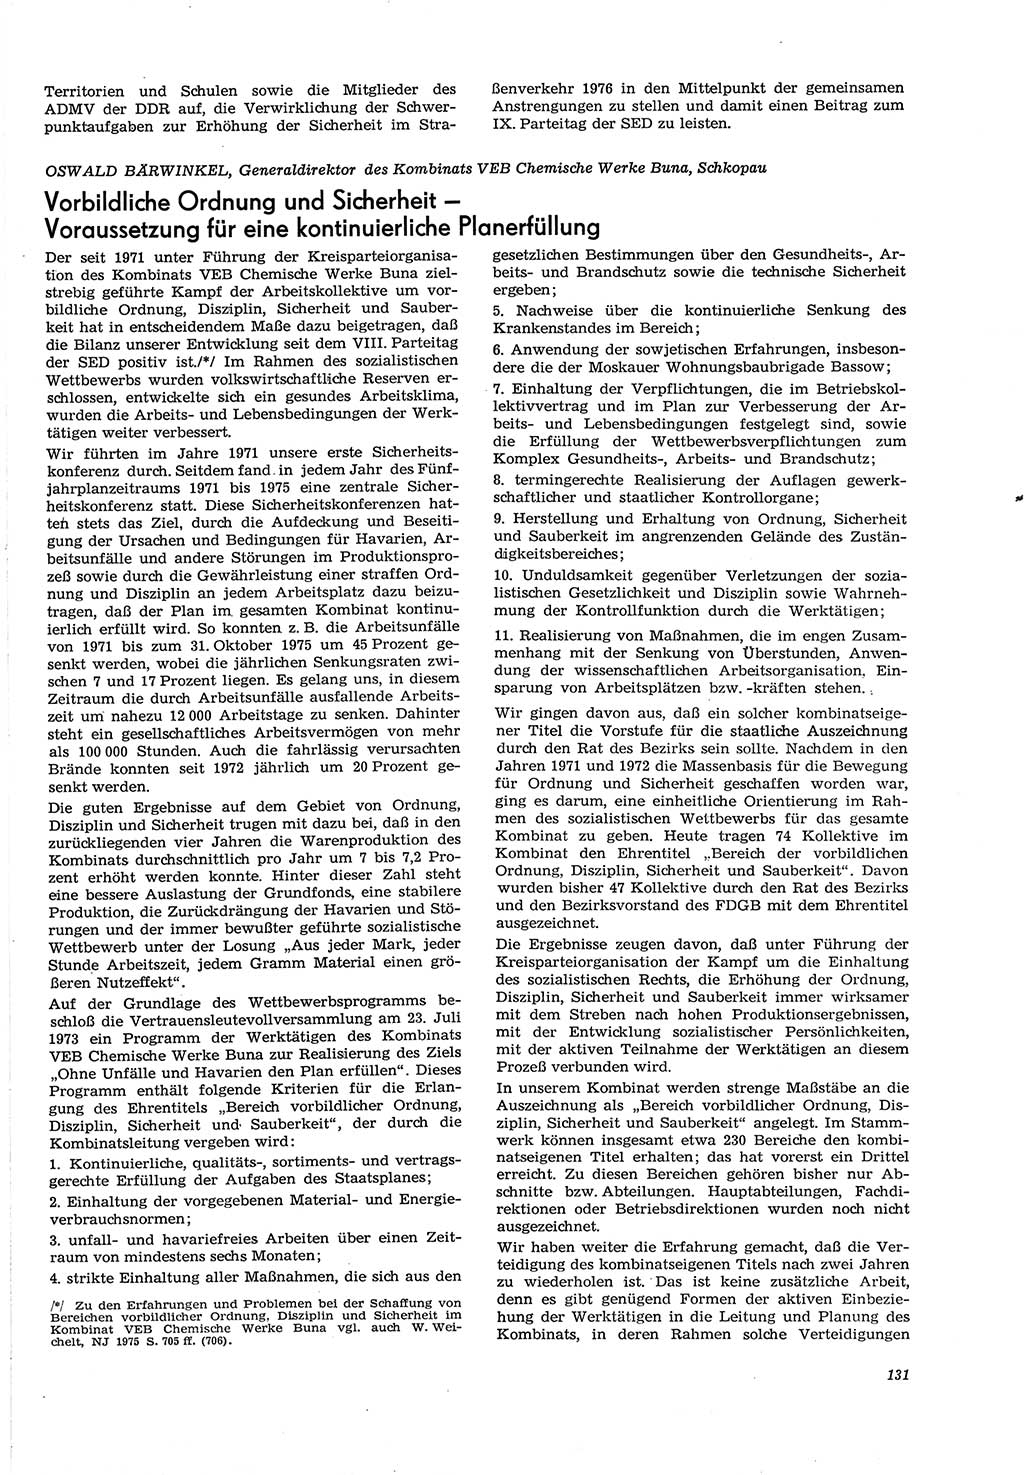 Neue Justiz (NJ), Zeitschrift für Recht und Rechtswissenschaft [Deutsche Demokratische Republik (DDR)], 30. Jahrgang 1976, Seite 131 (NJ DDR 1976, S. 131)